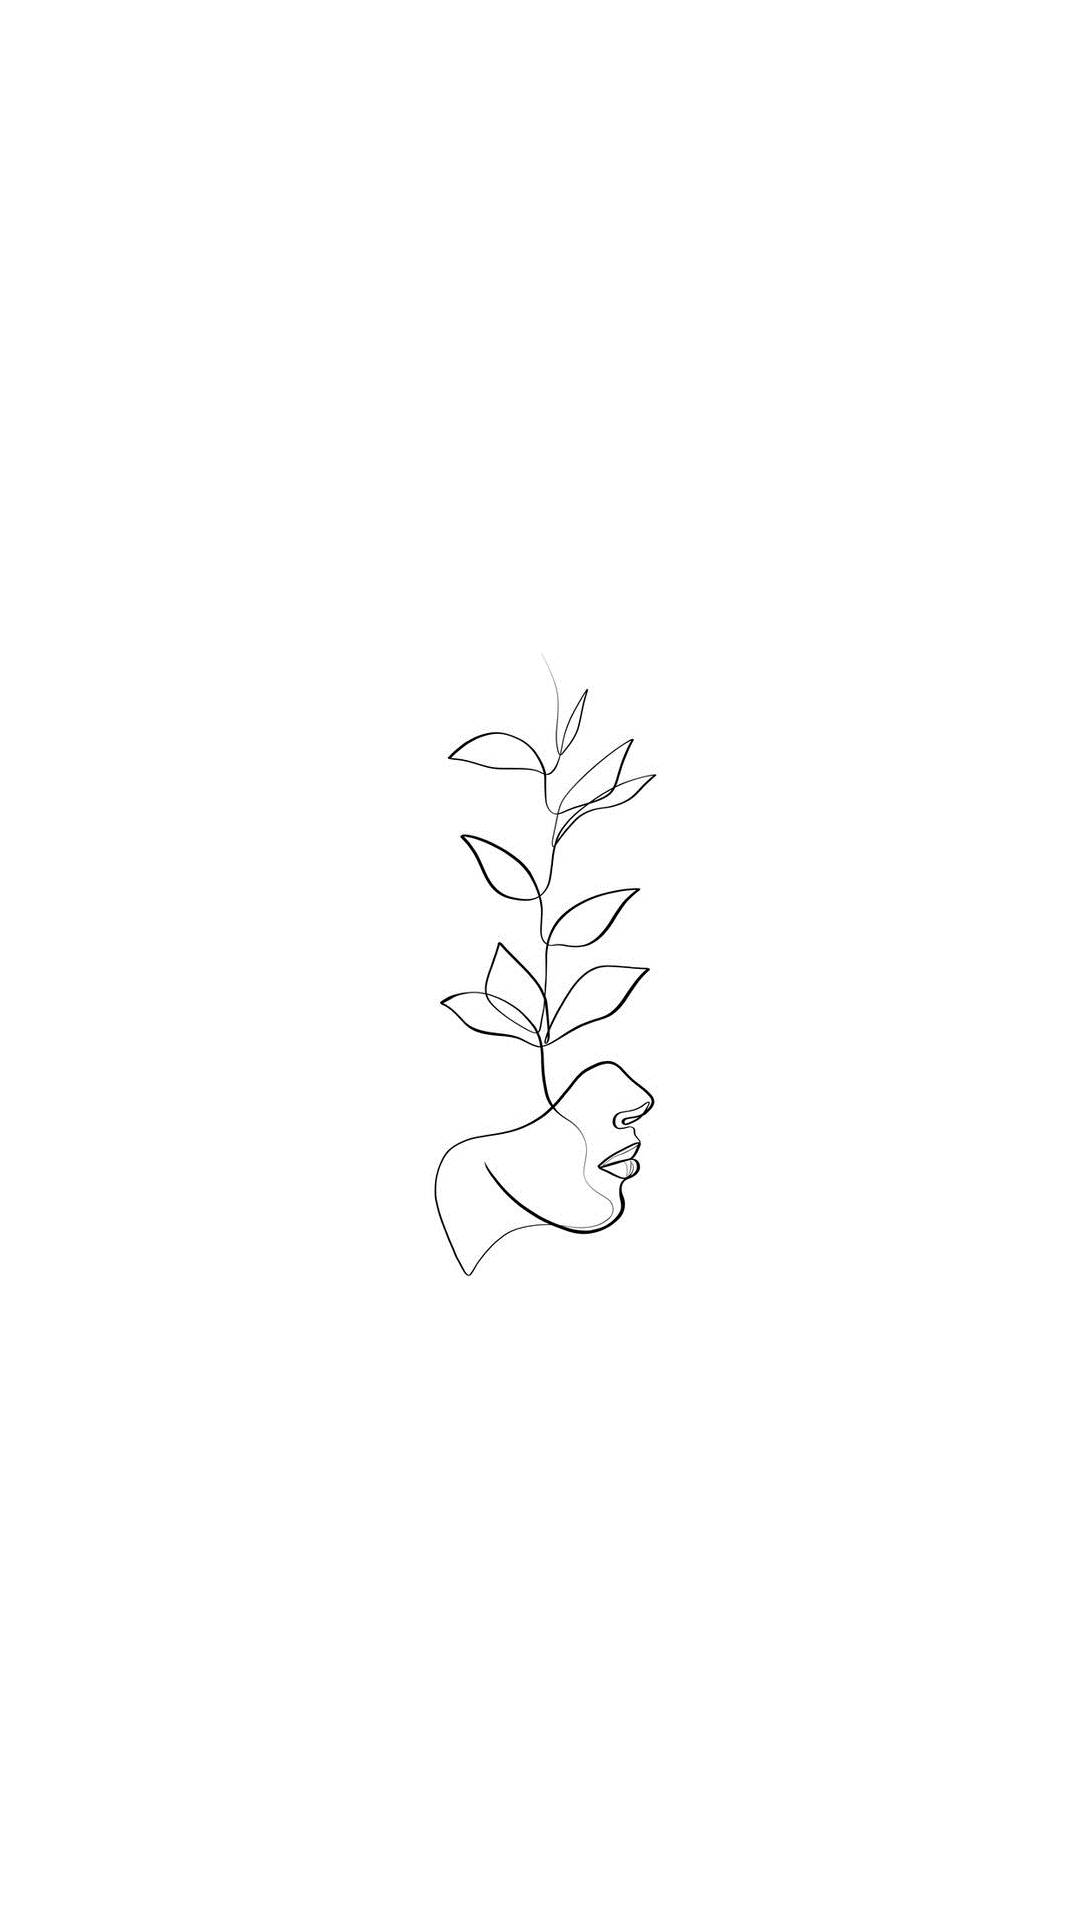 Desenhode Planta De Mulher Em Uma Linha. Papel de Parede